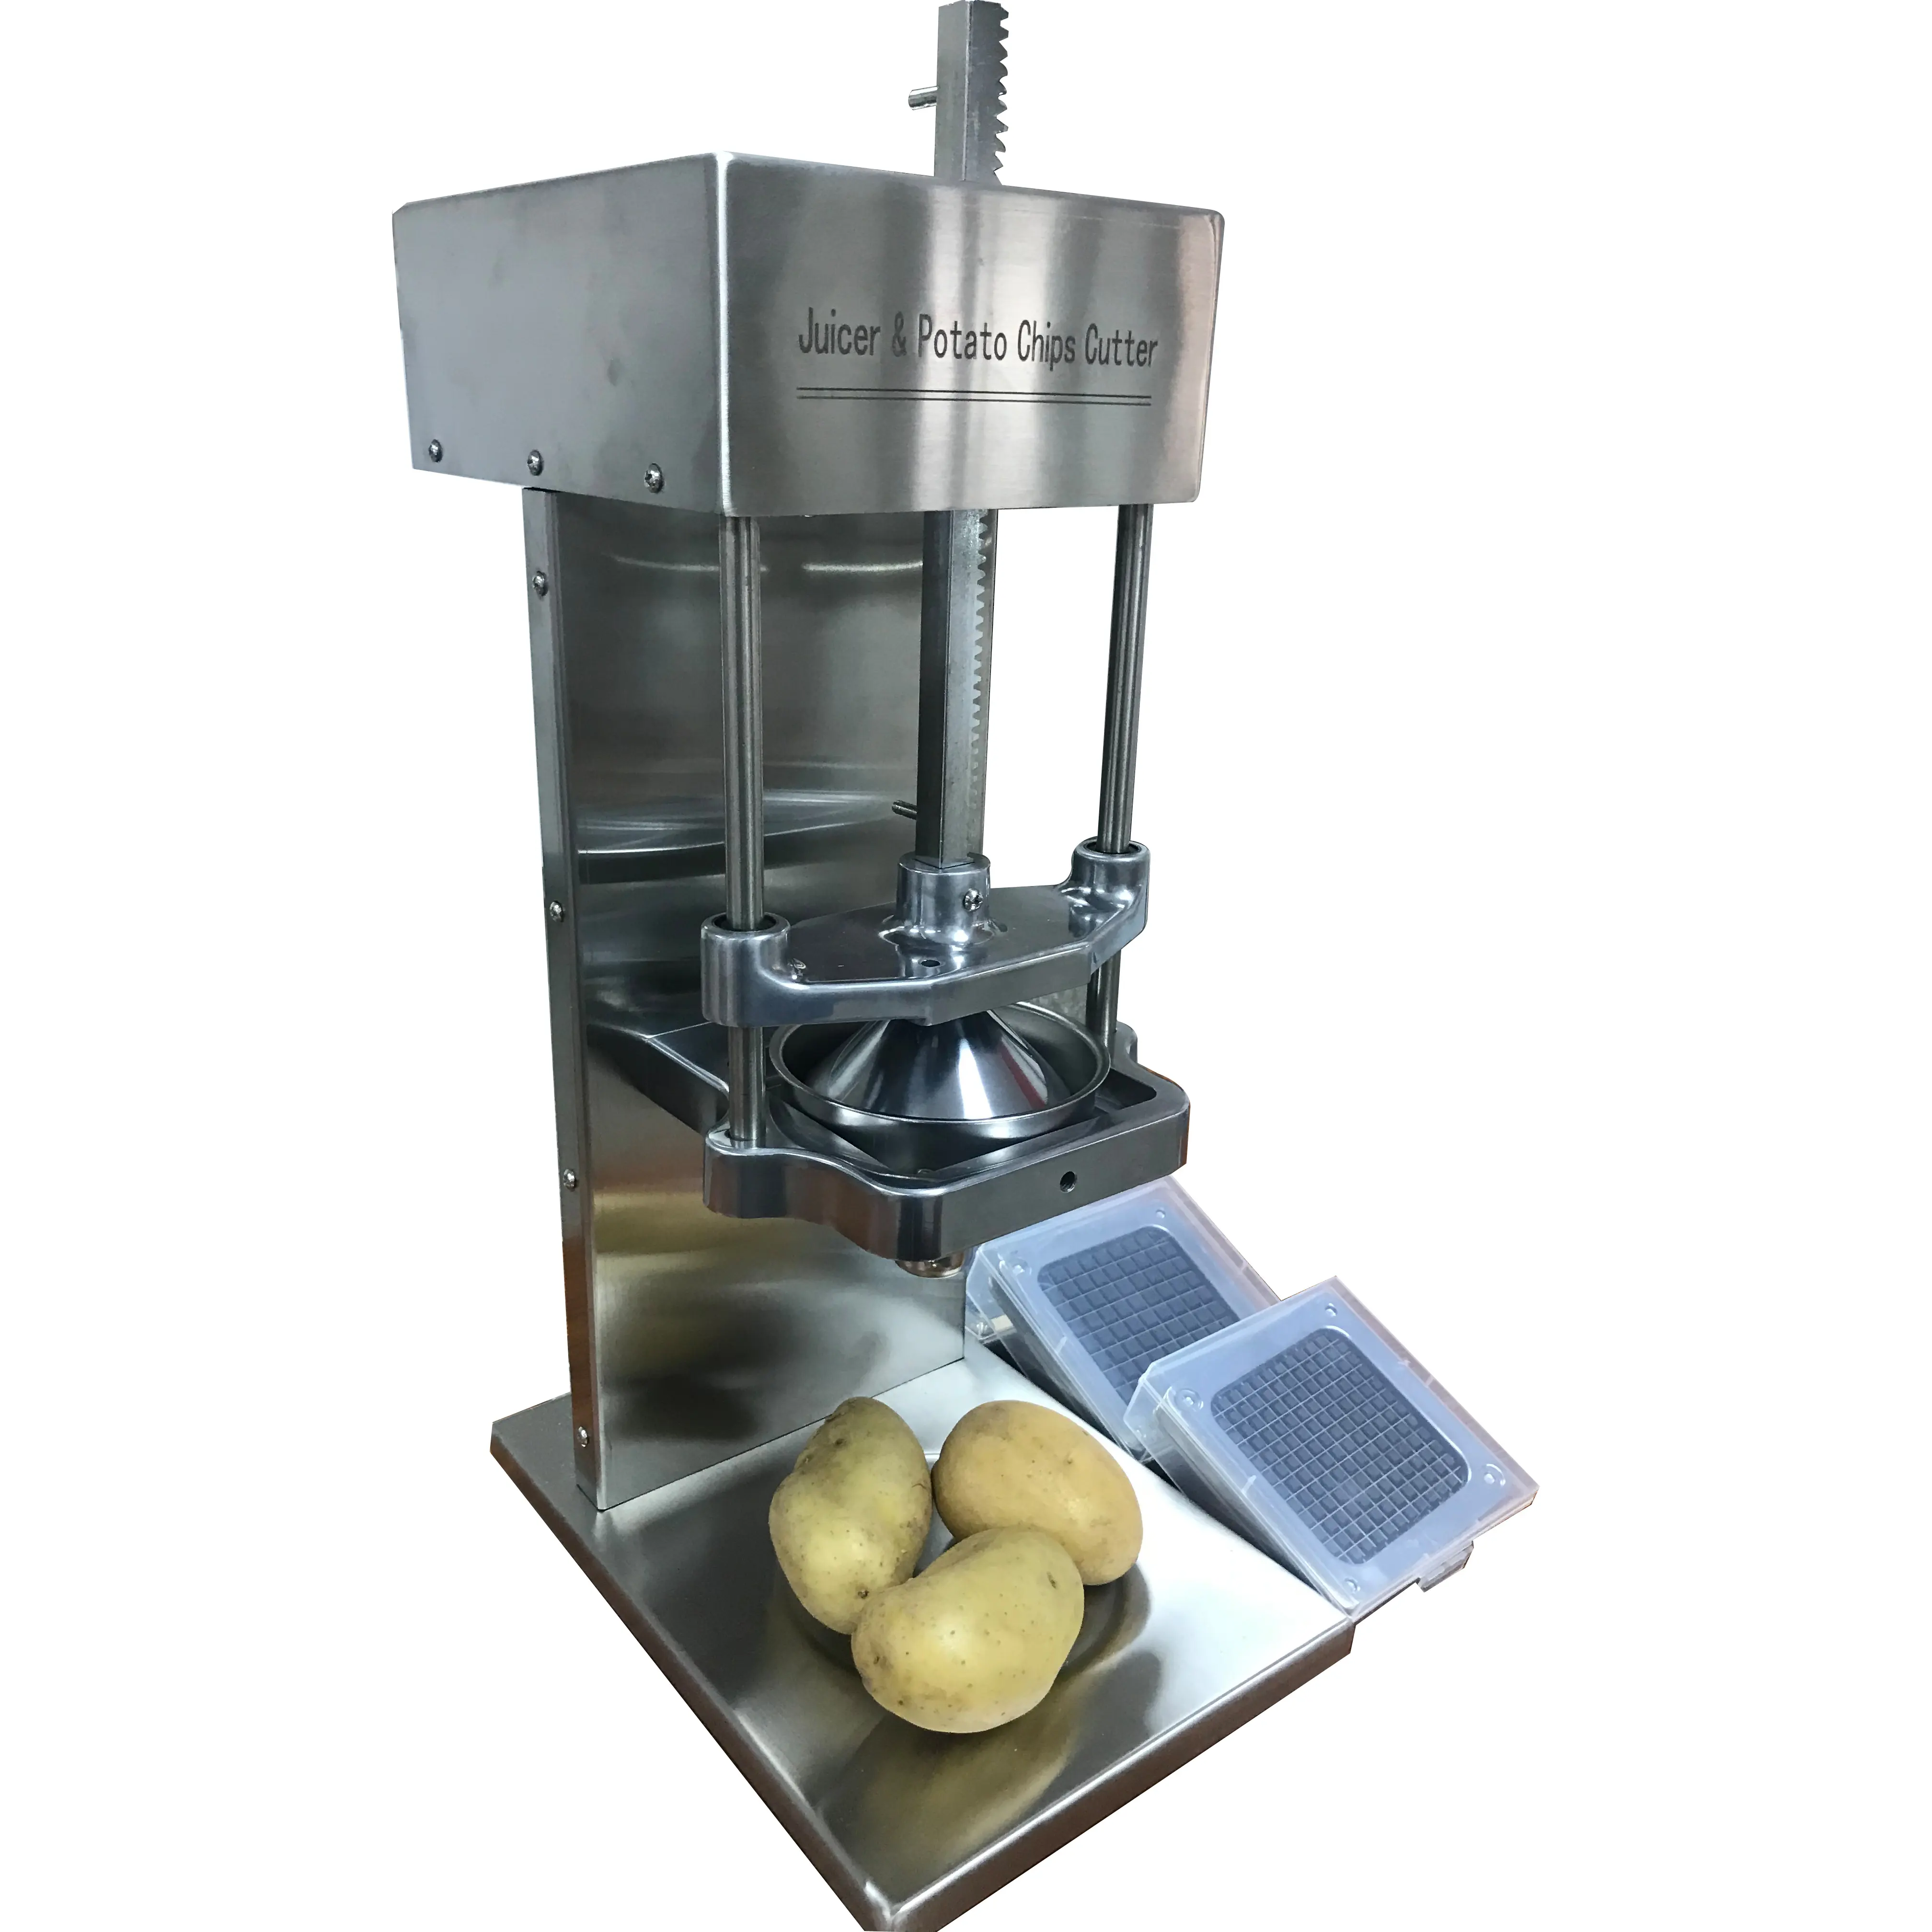 Exprimidor de acero inoxidable de alta calidad para alimentos, máquina para freír patatas fritas, máquina para hacer patatas fritas